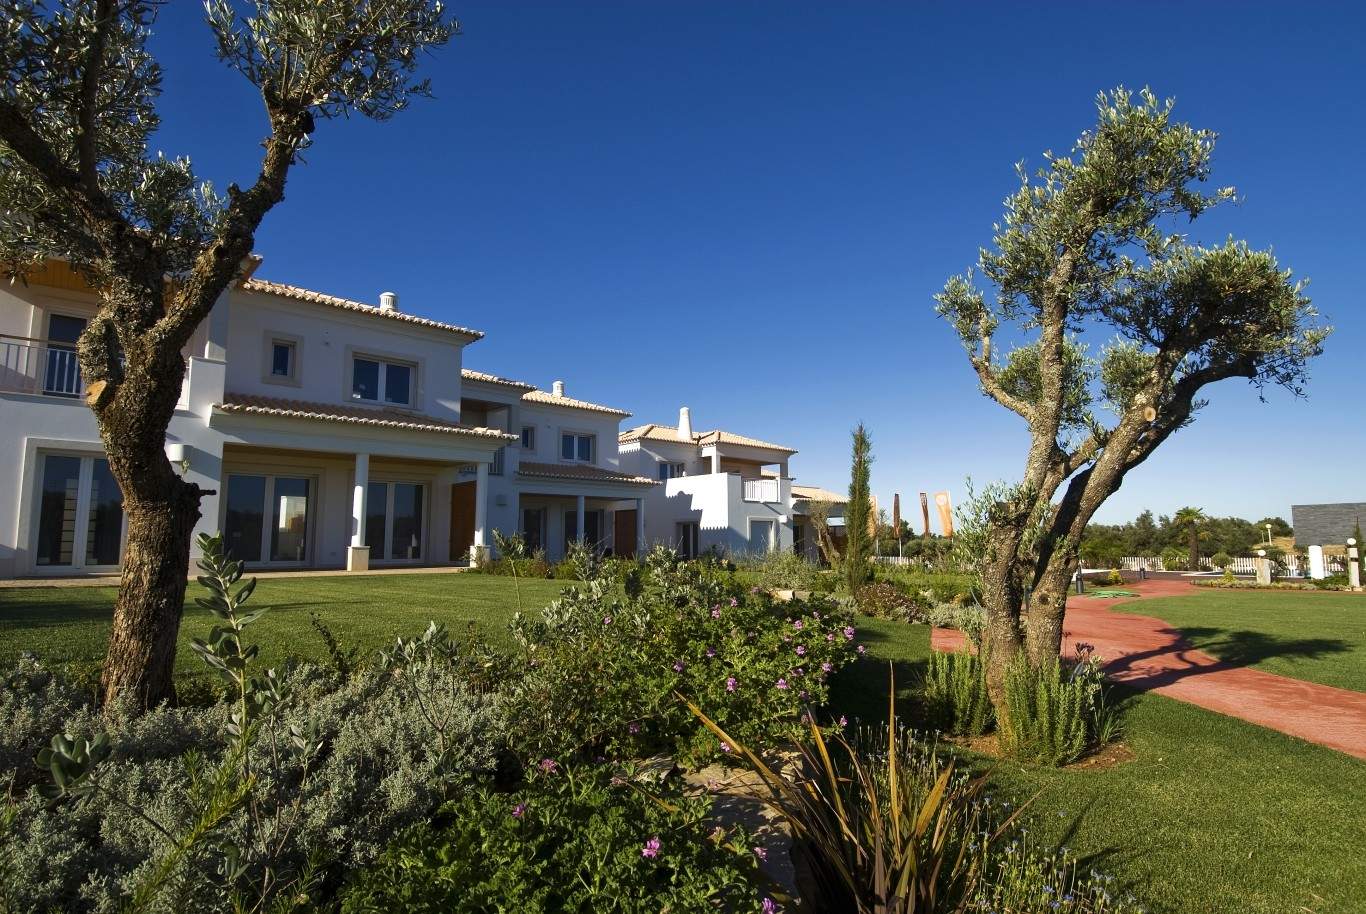 Venda de moradia nova, piscina, golfe de Vilamoura, Algarve, Portugal_54163